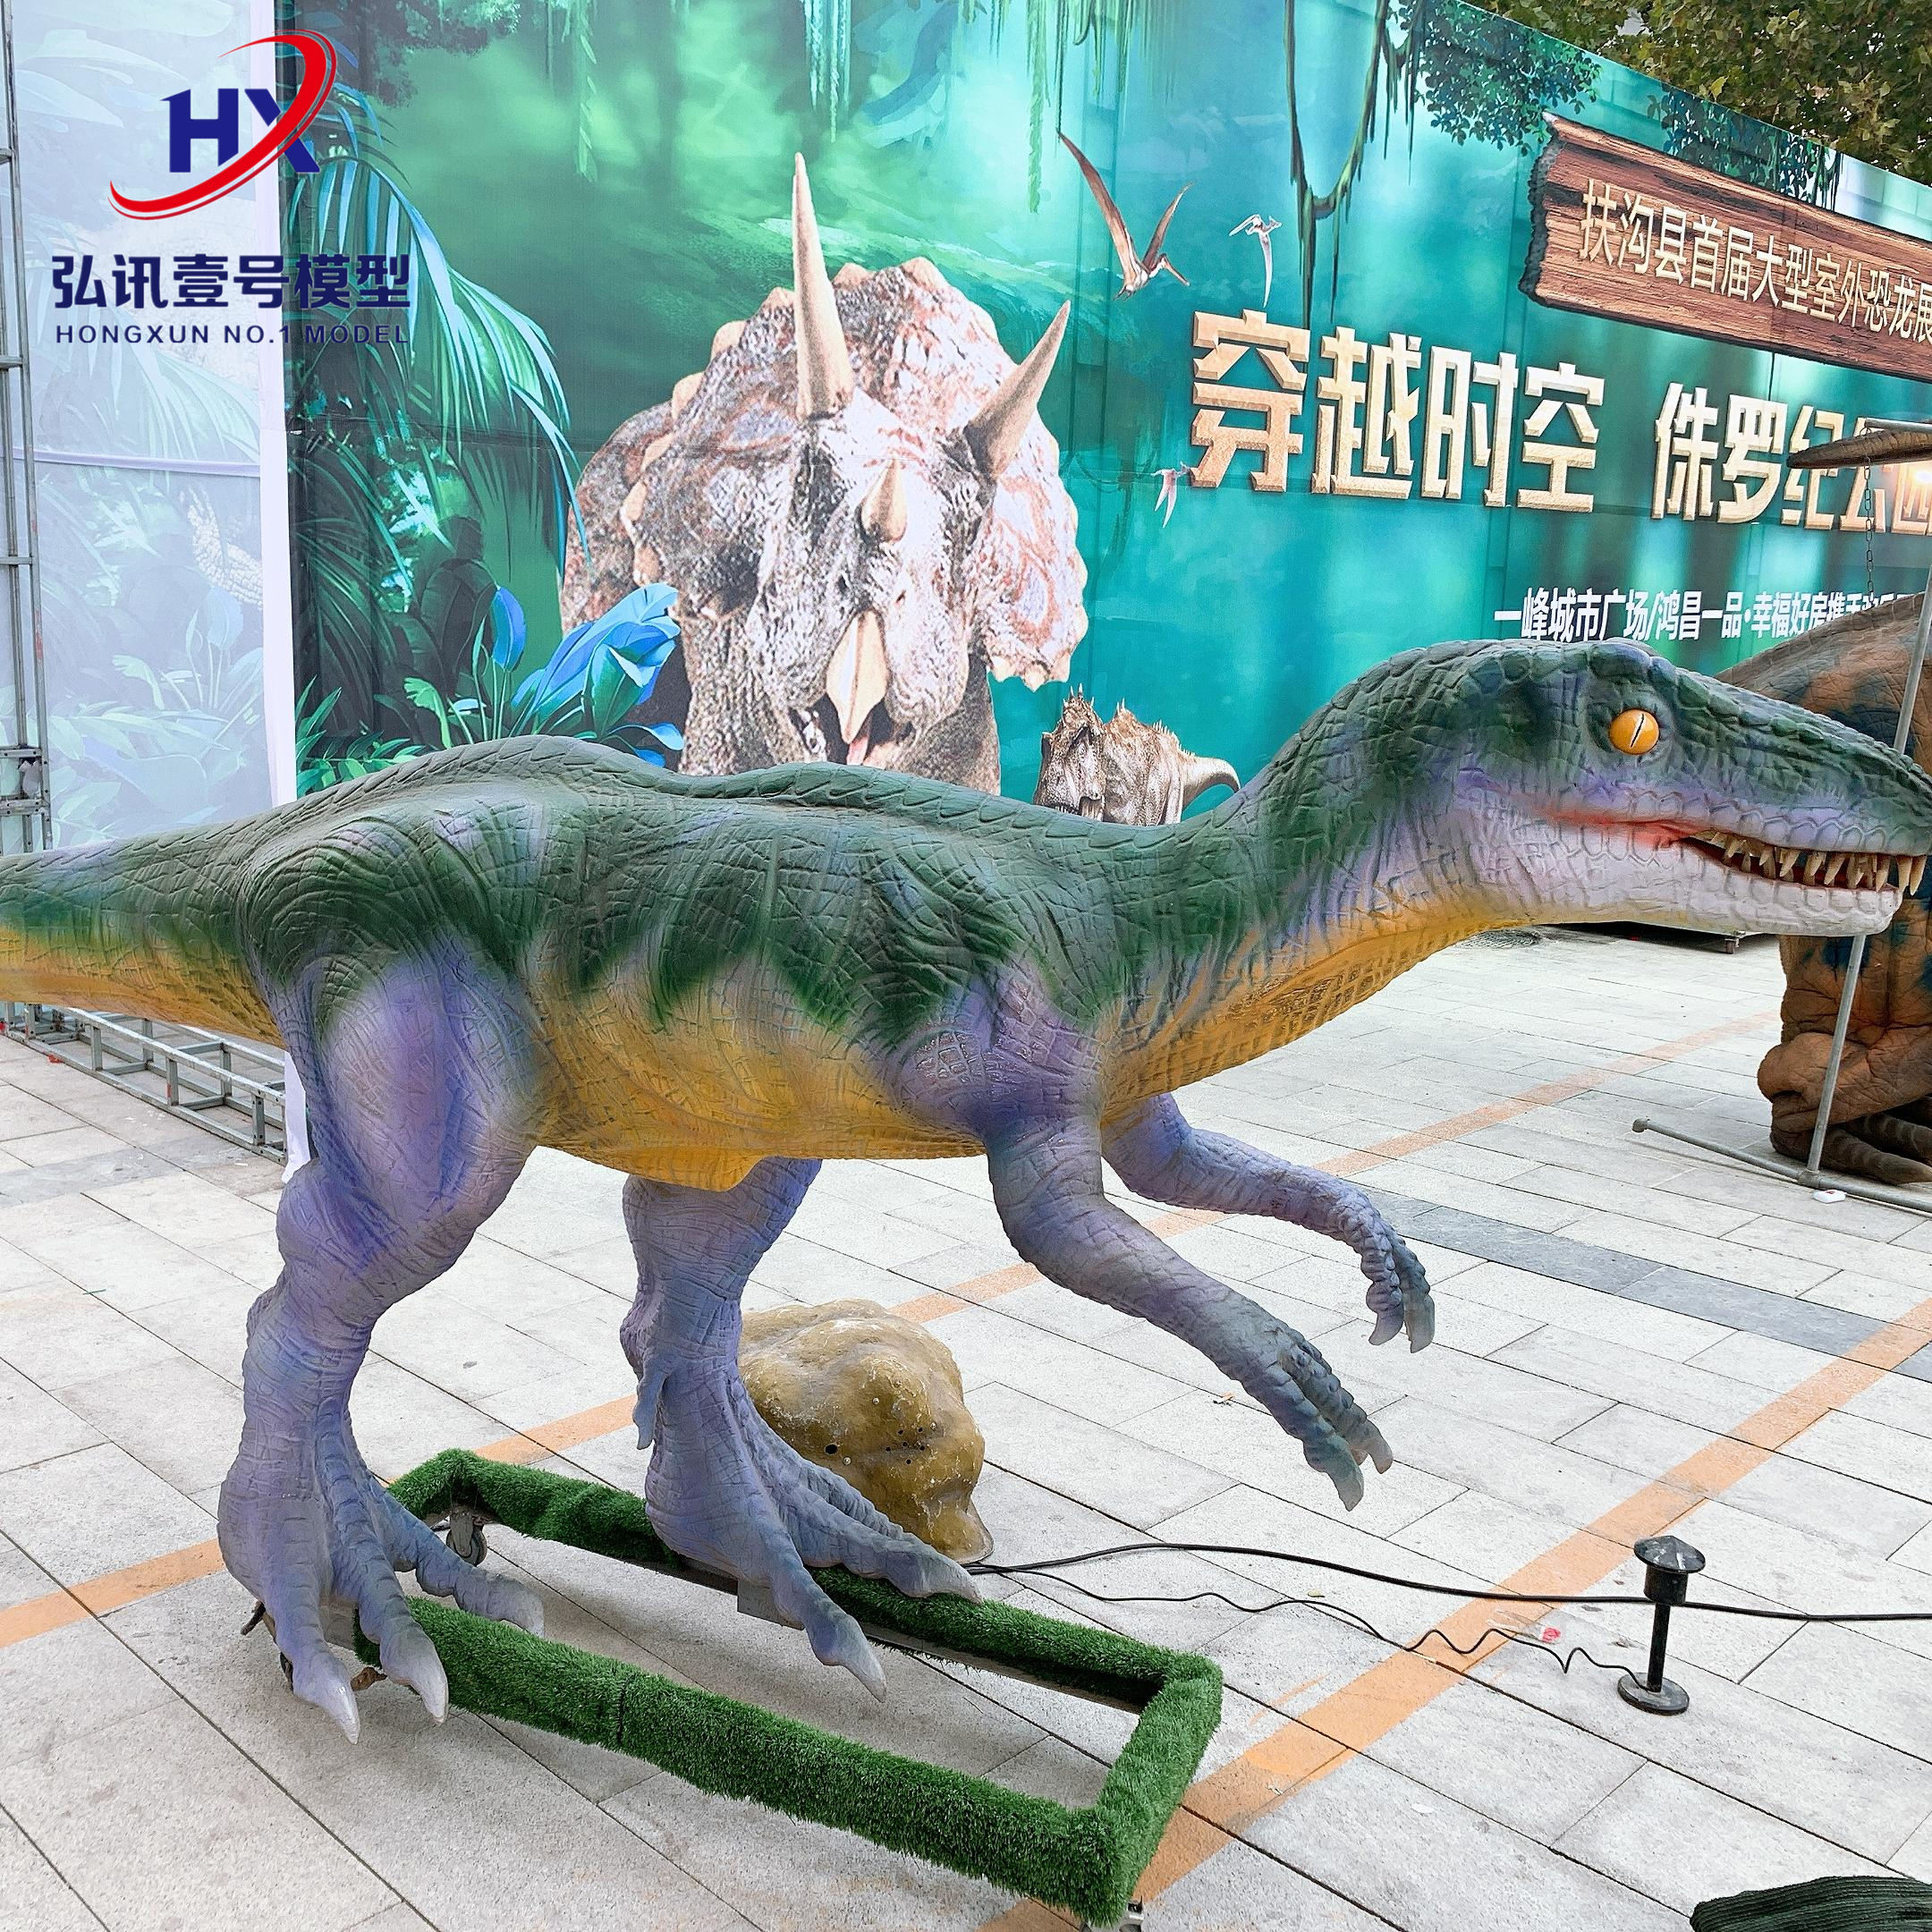 侏罗纪恐龙展览大型仿真恐龙模型景区公园动物模型租赁出租图片